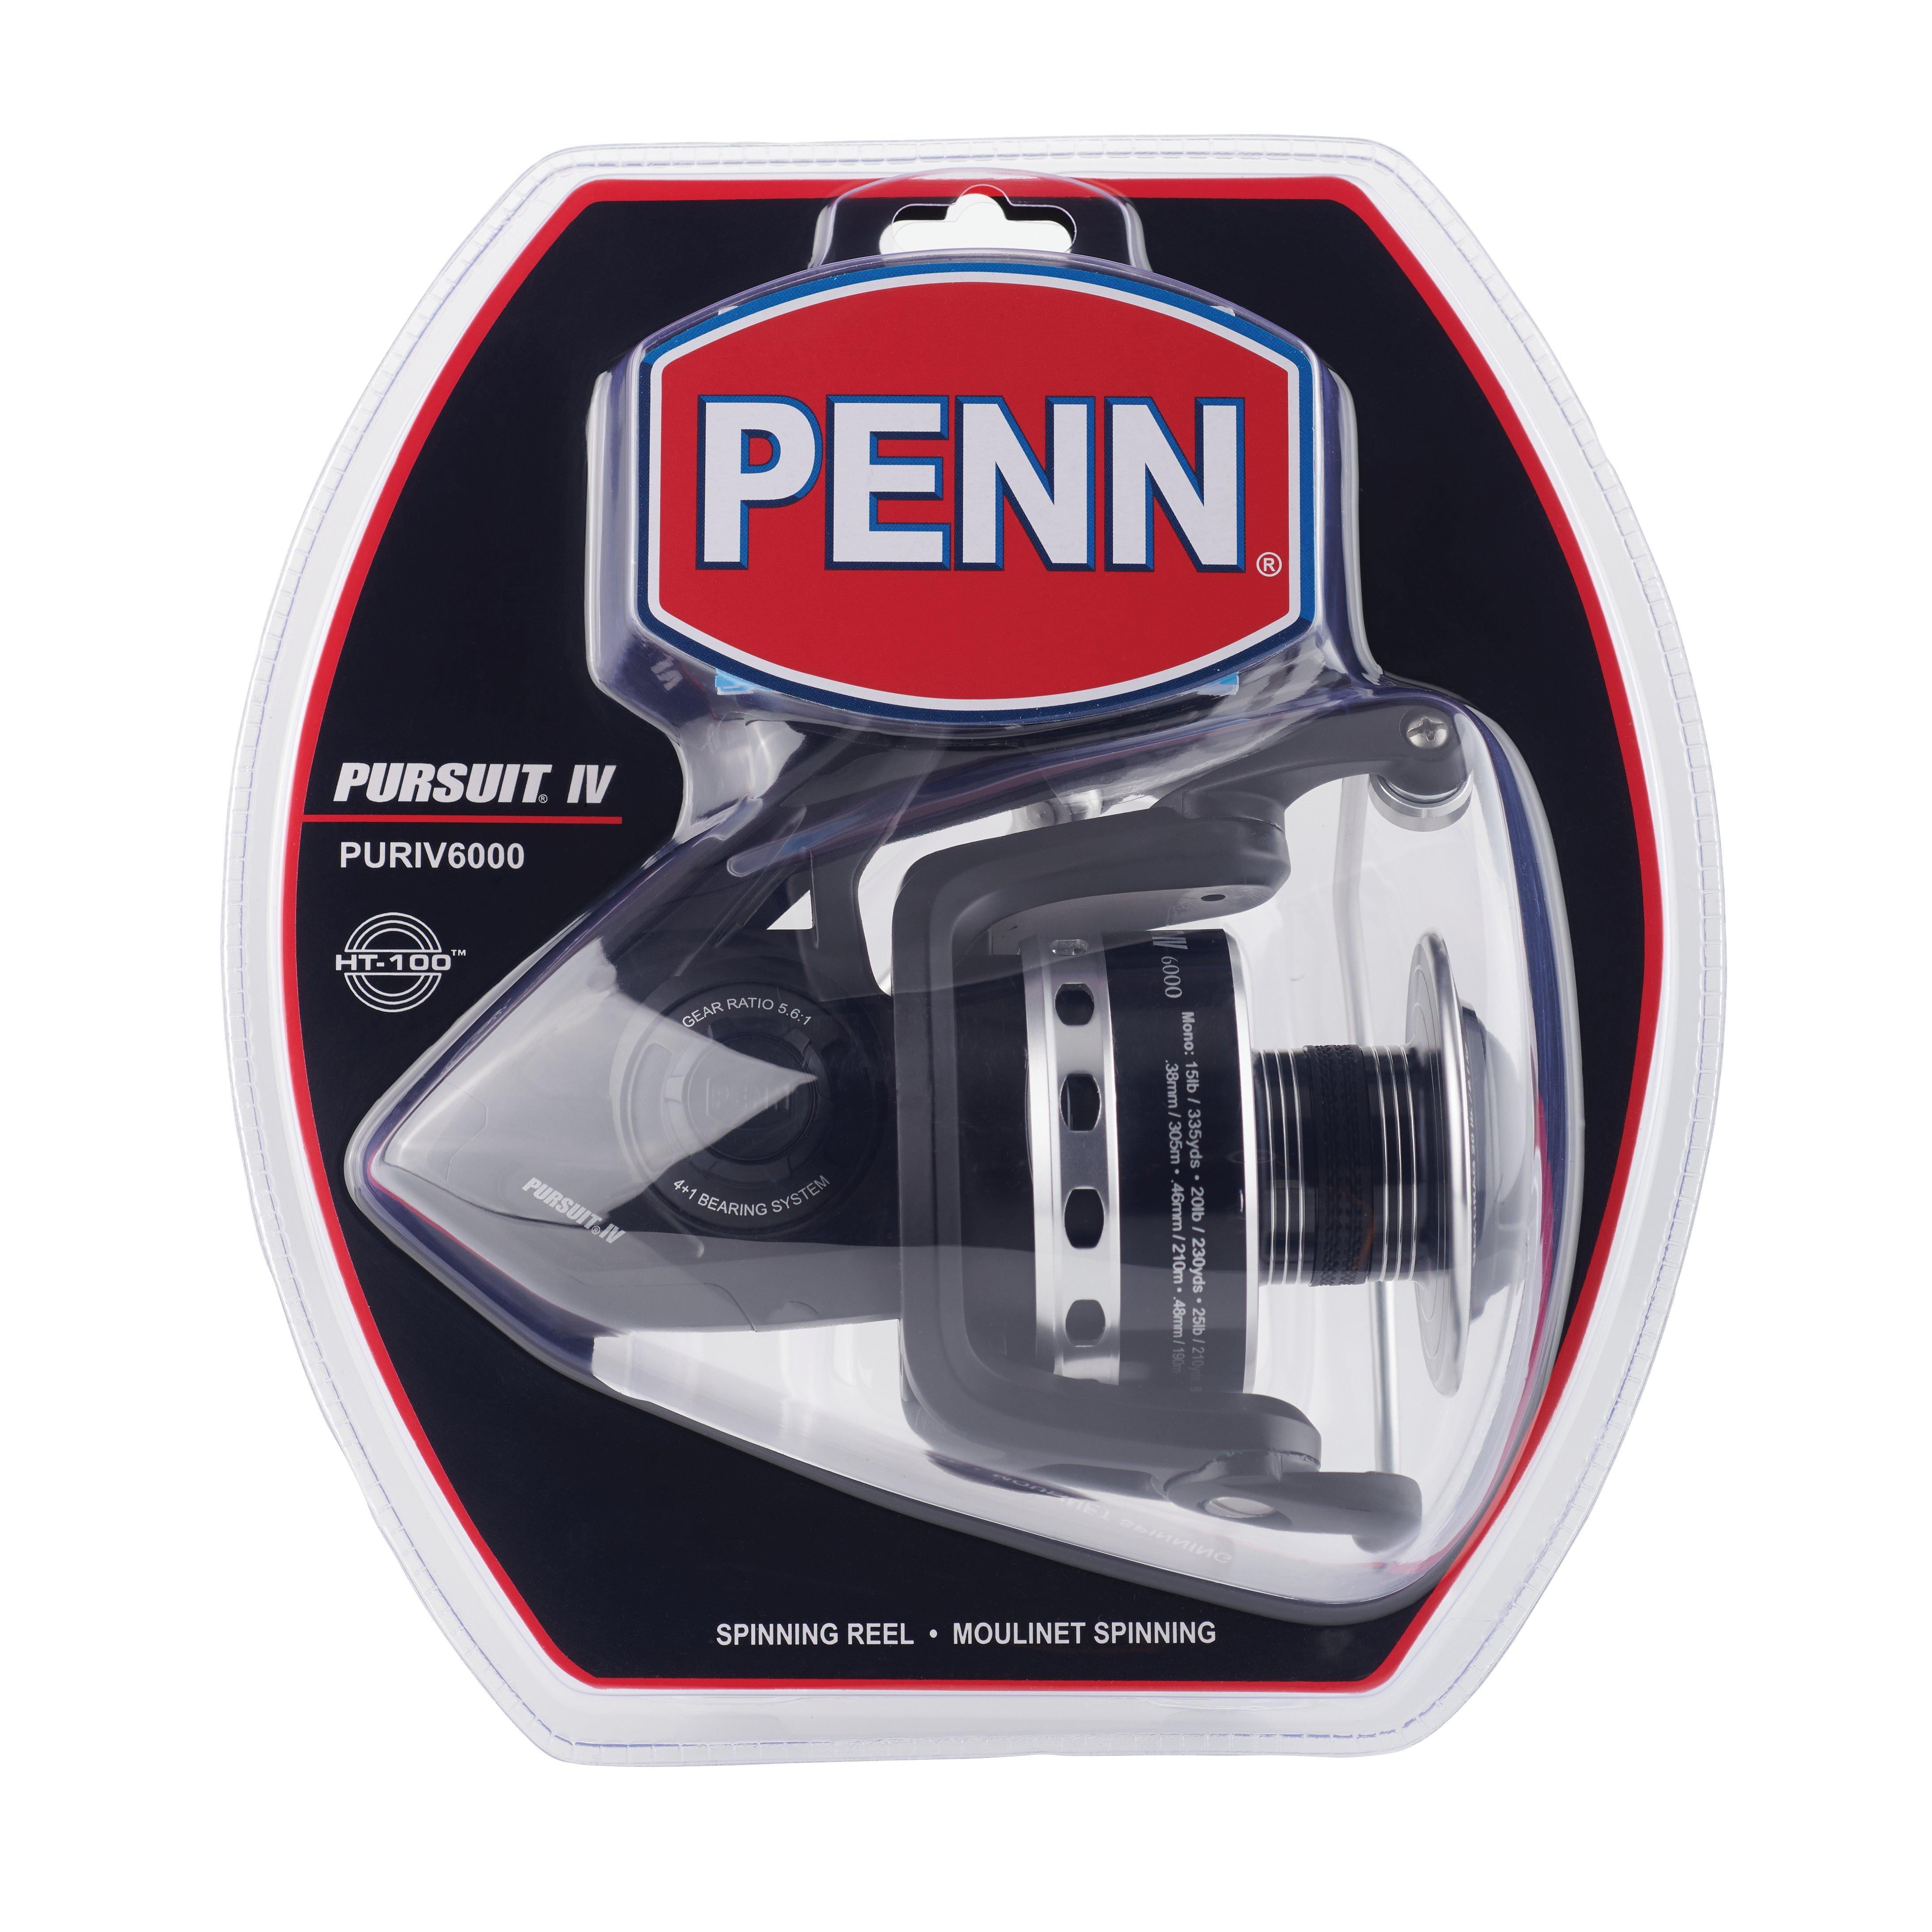 Buy Penn Pursuit IV 6000 online at